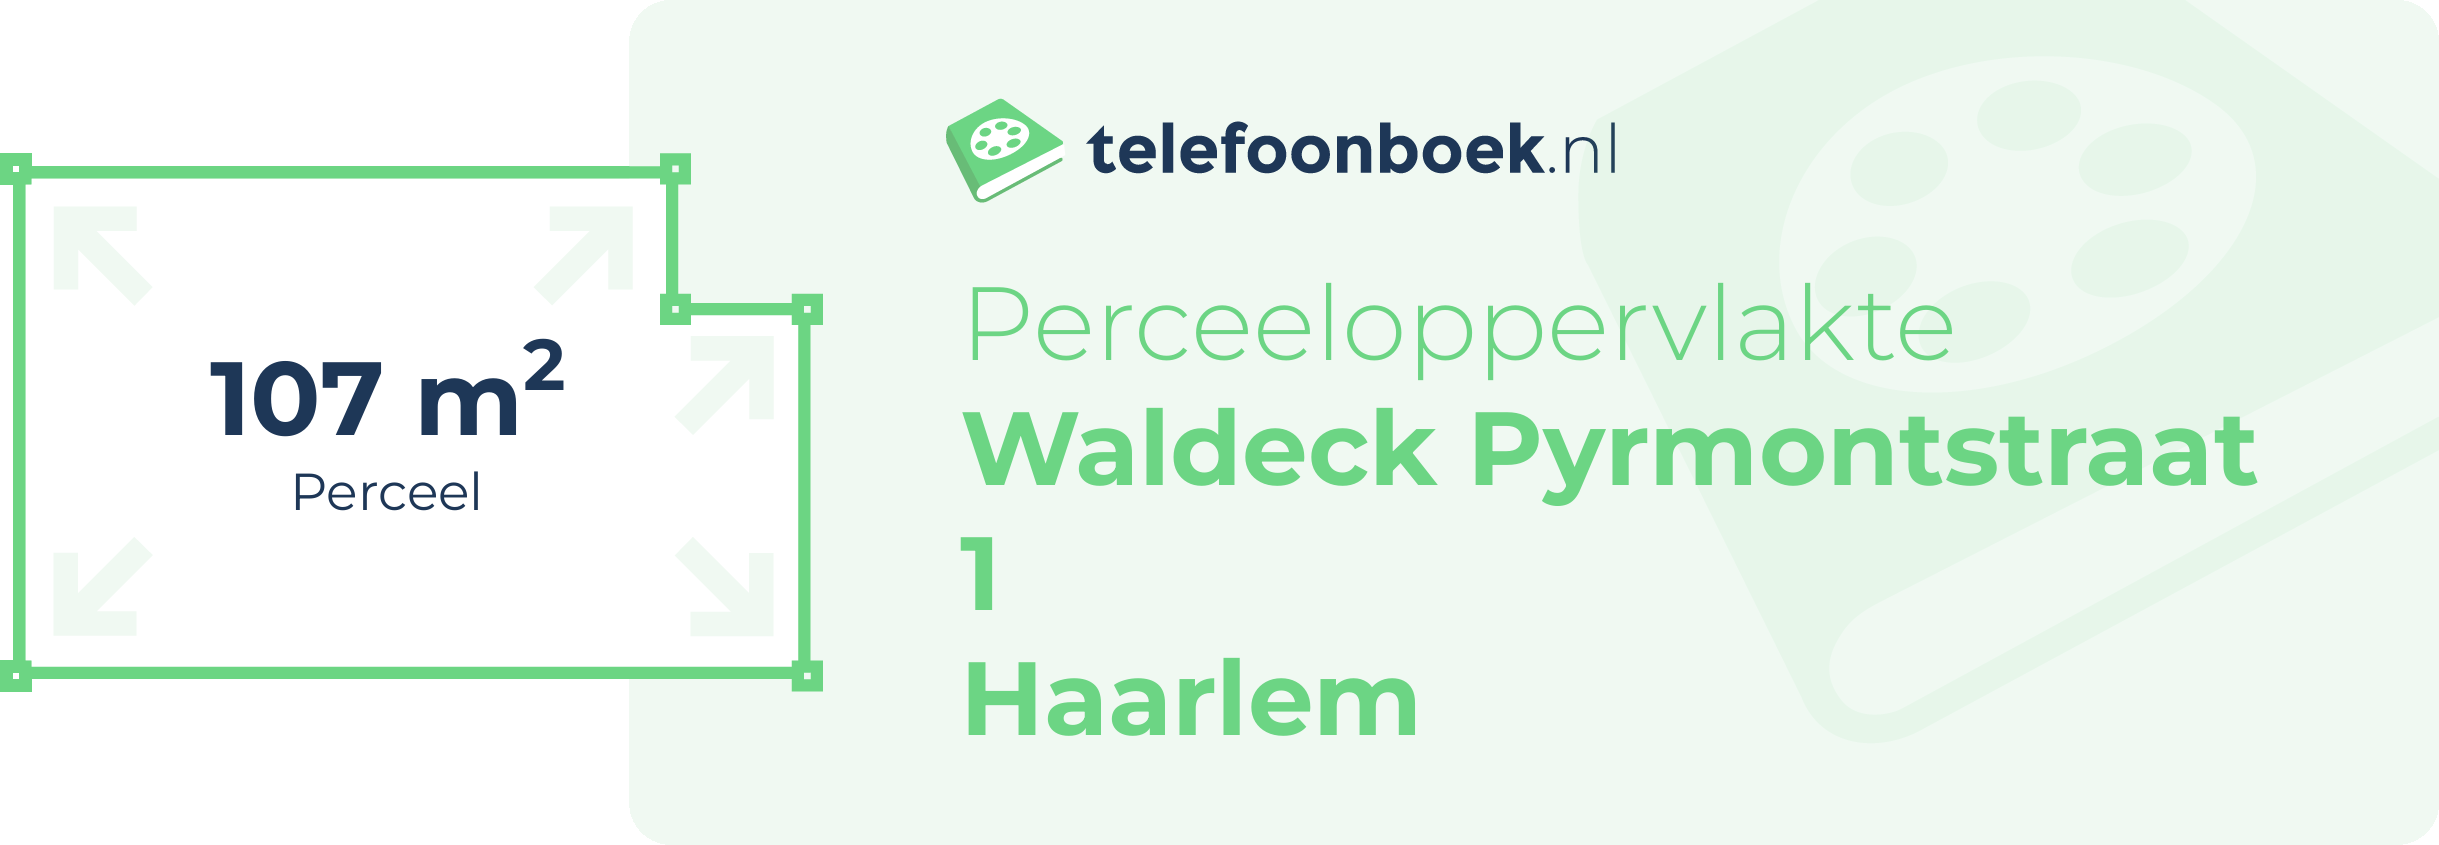 Perceeloppervlakte Waldeck Pyrmontstraat 1 Haarlem